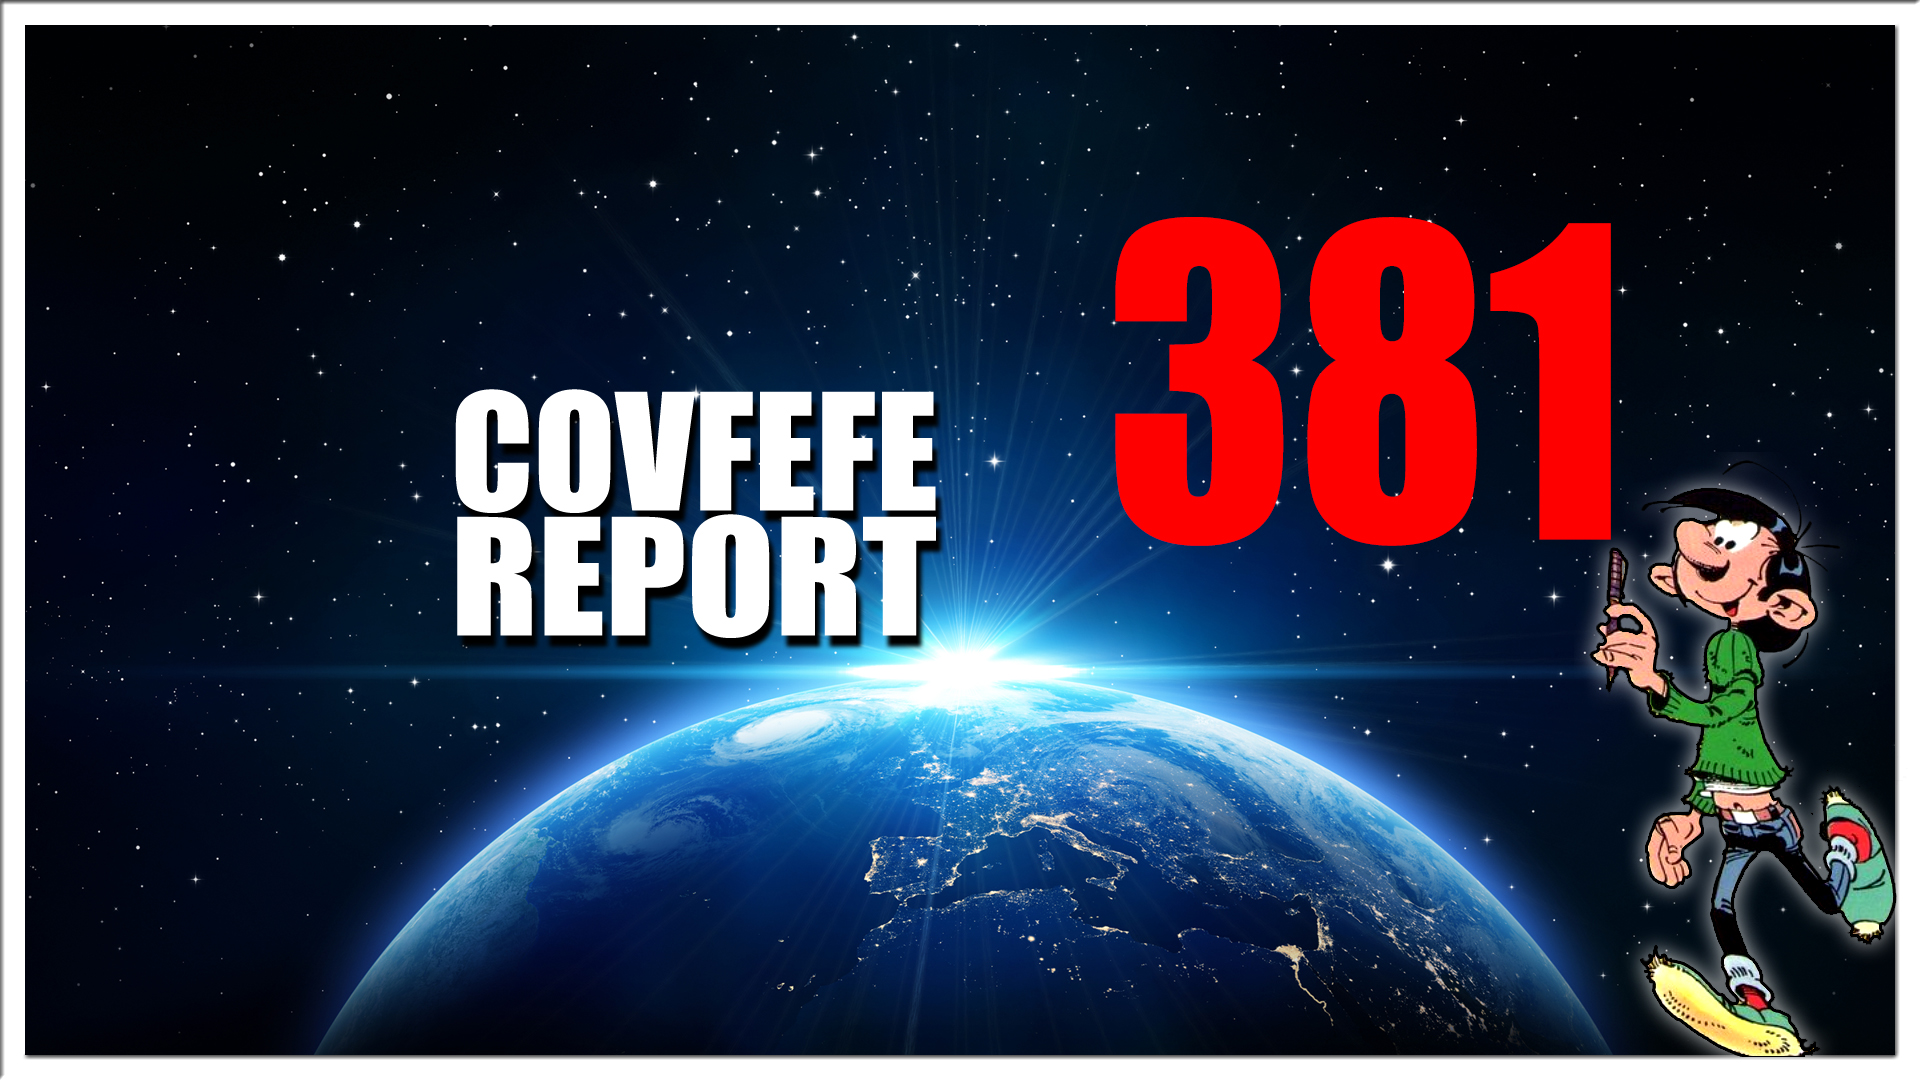 Covfefe Report 381. We never left,JFK, Blijf met je poten van onze kinderen af!